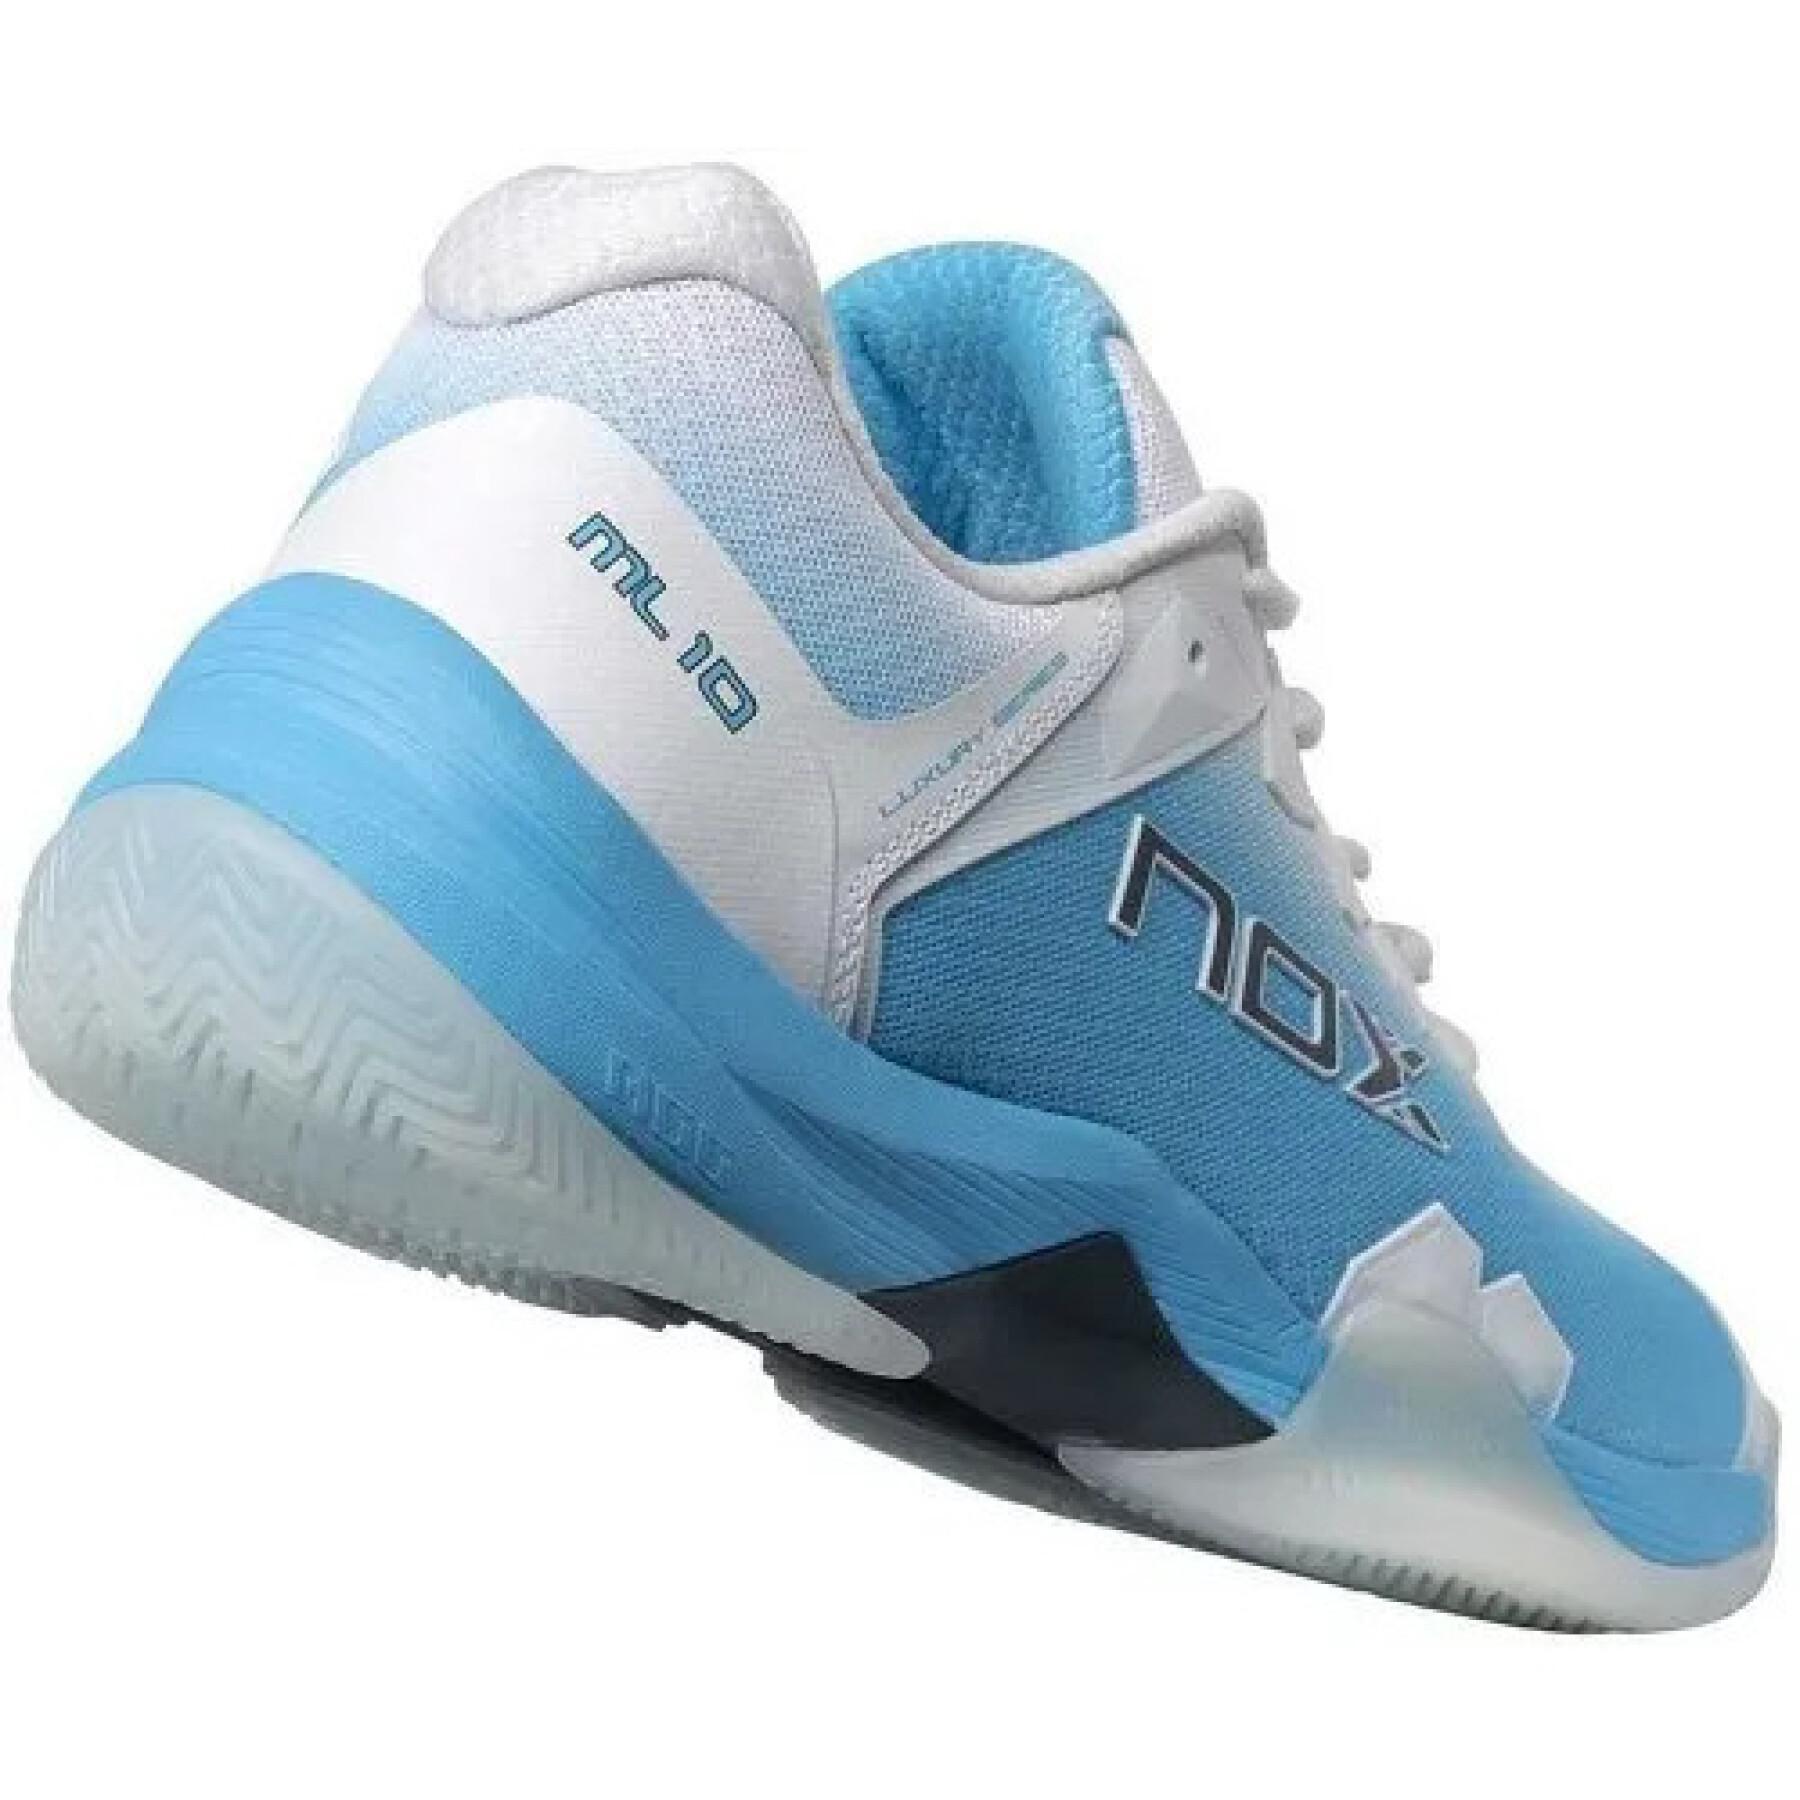 Padel shoes Nox ML10 Hexa